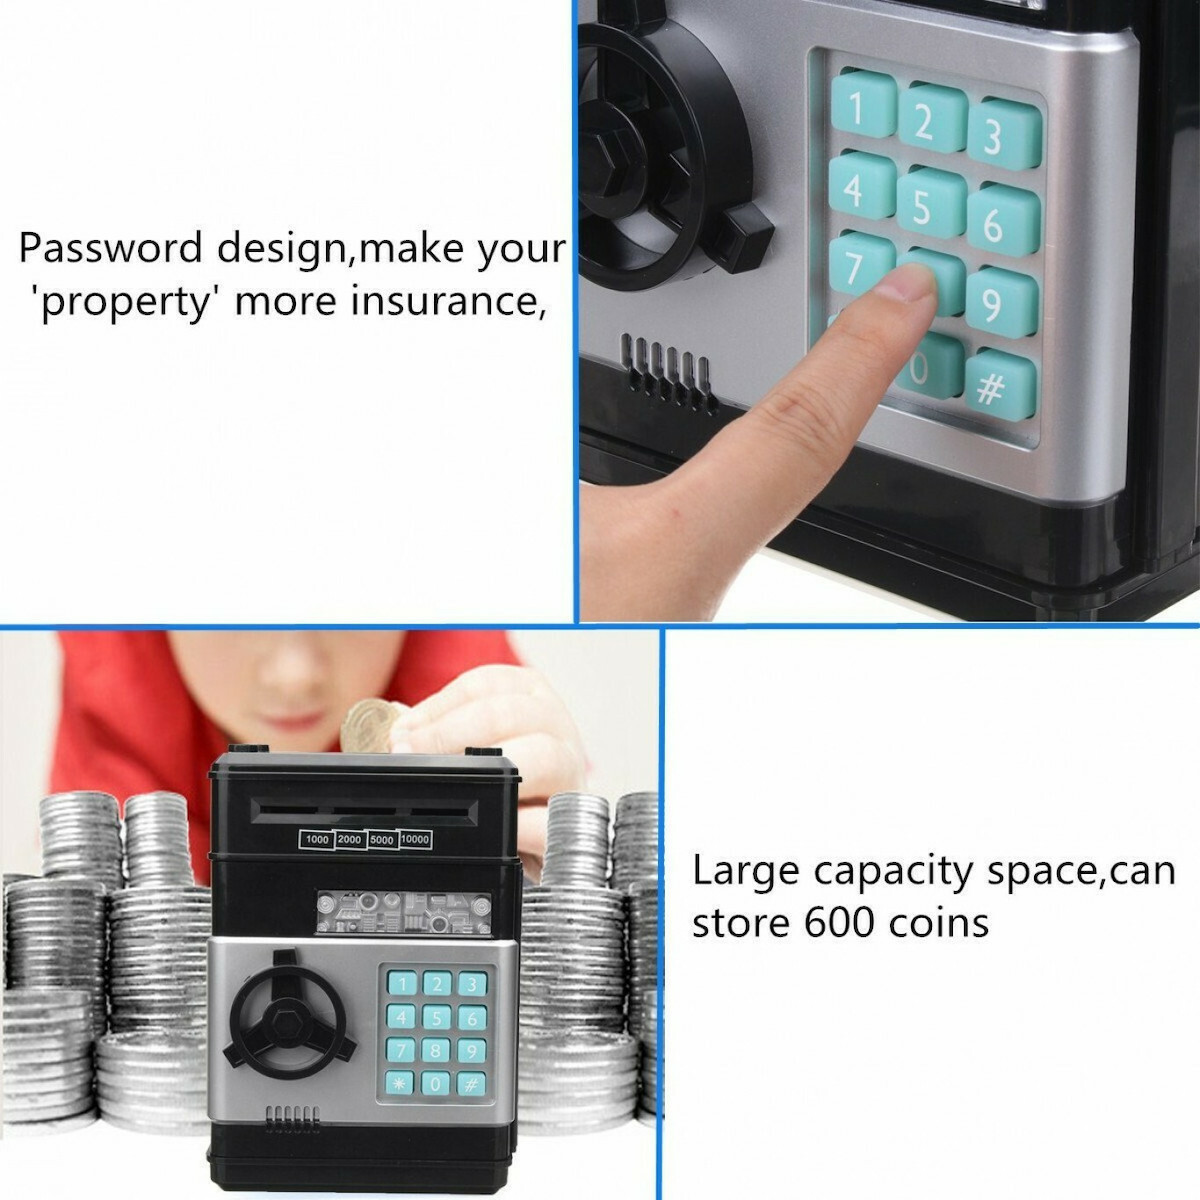 Ηλεκτρονικος Κουμπαρας Χρηματοκιβωτιο Με Κωδικο Ασφαλειας σε μαυρο χρωμα